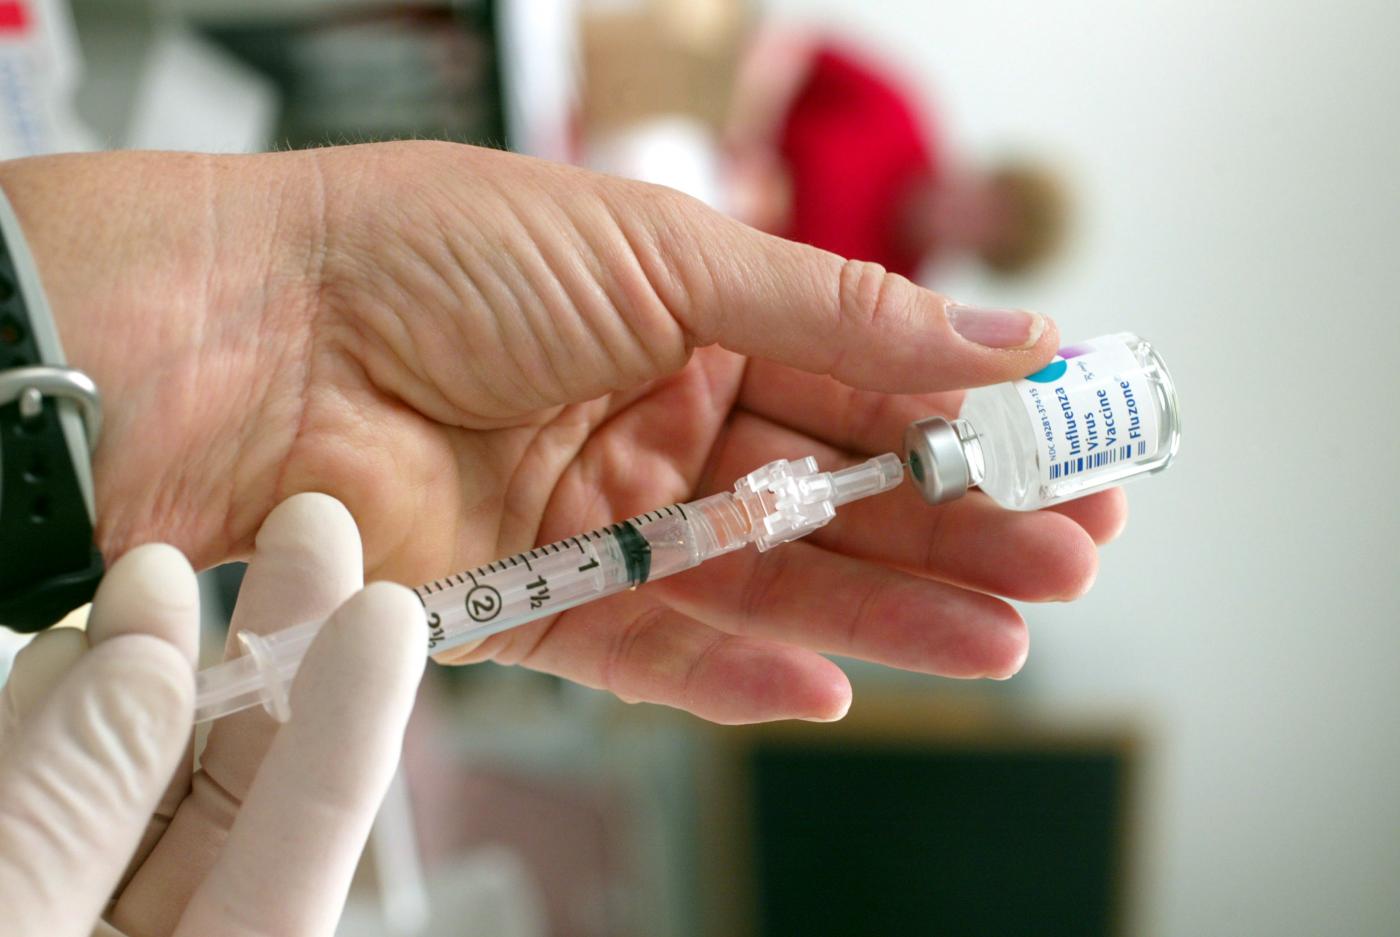 Vaccini obbligatori, novità del decreto legge: cosa cambia